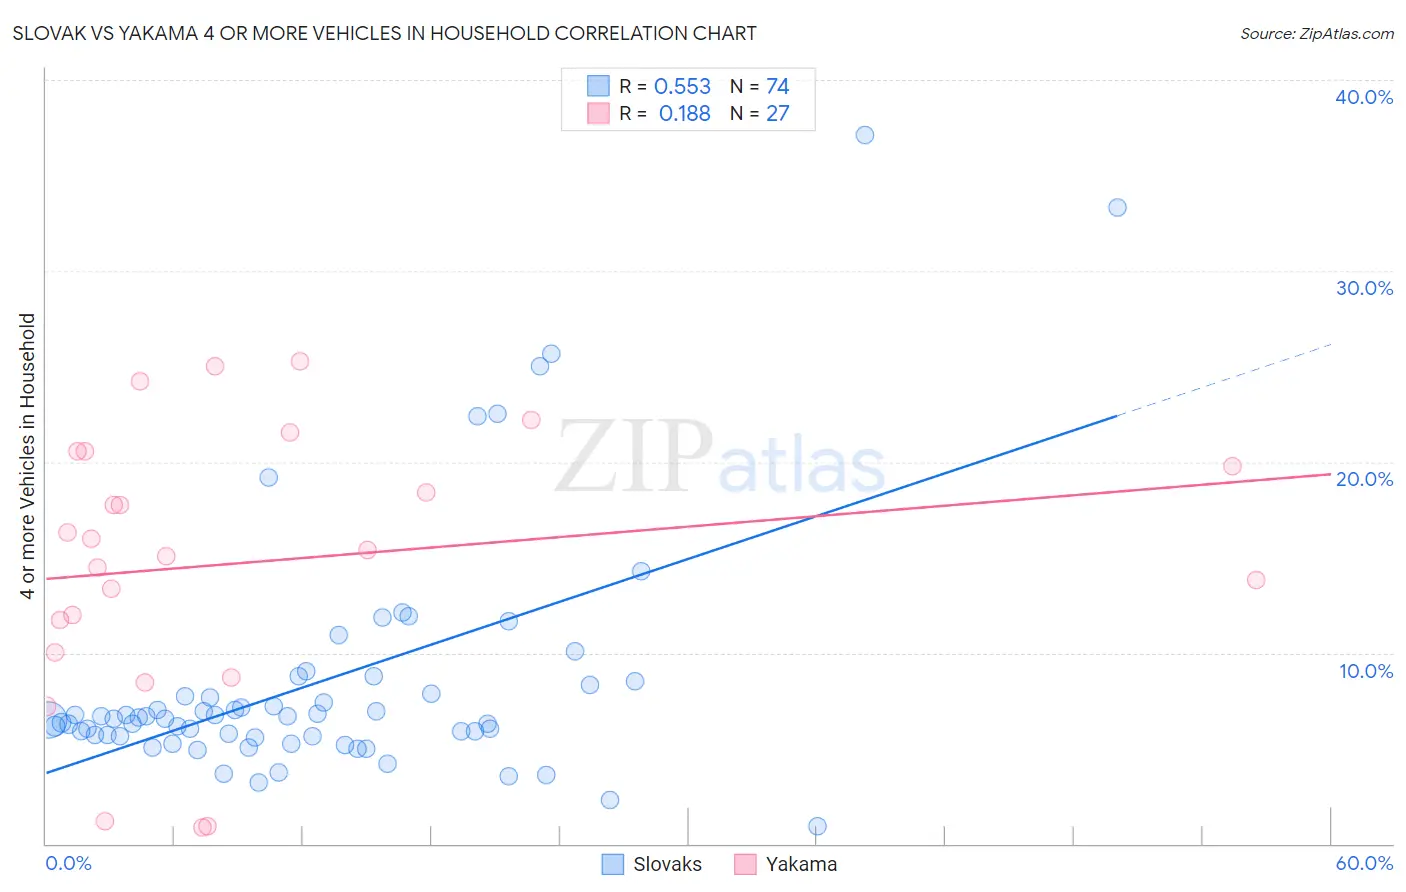 Slovak vs Yakama 4 or more Vehicles in Household